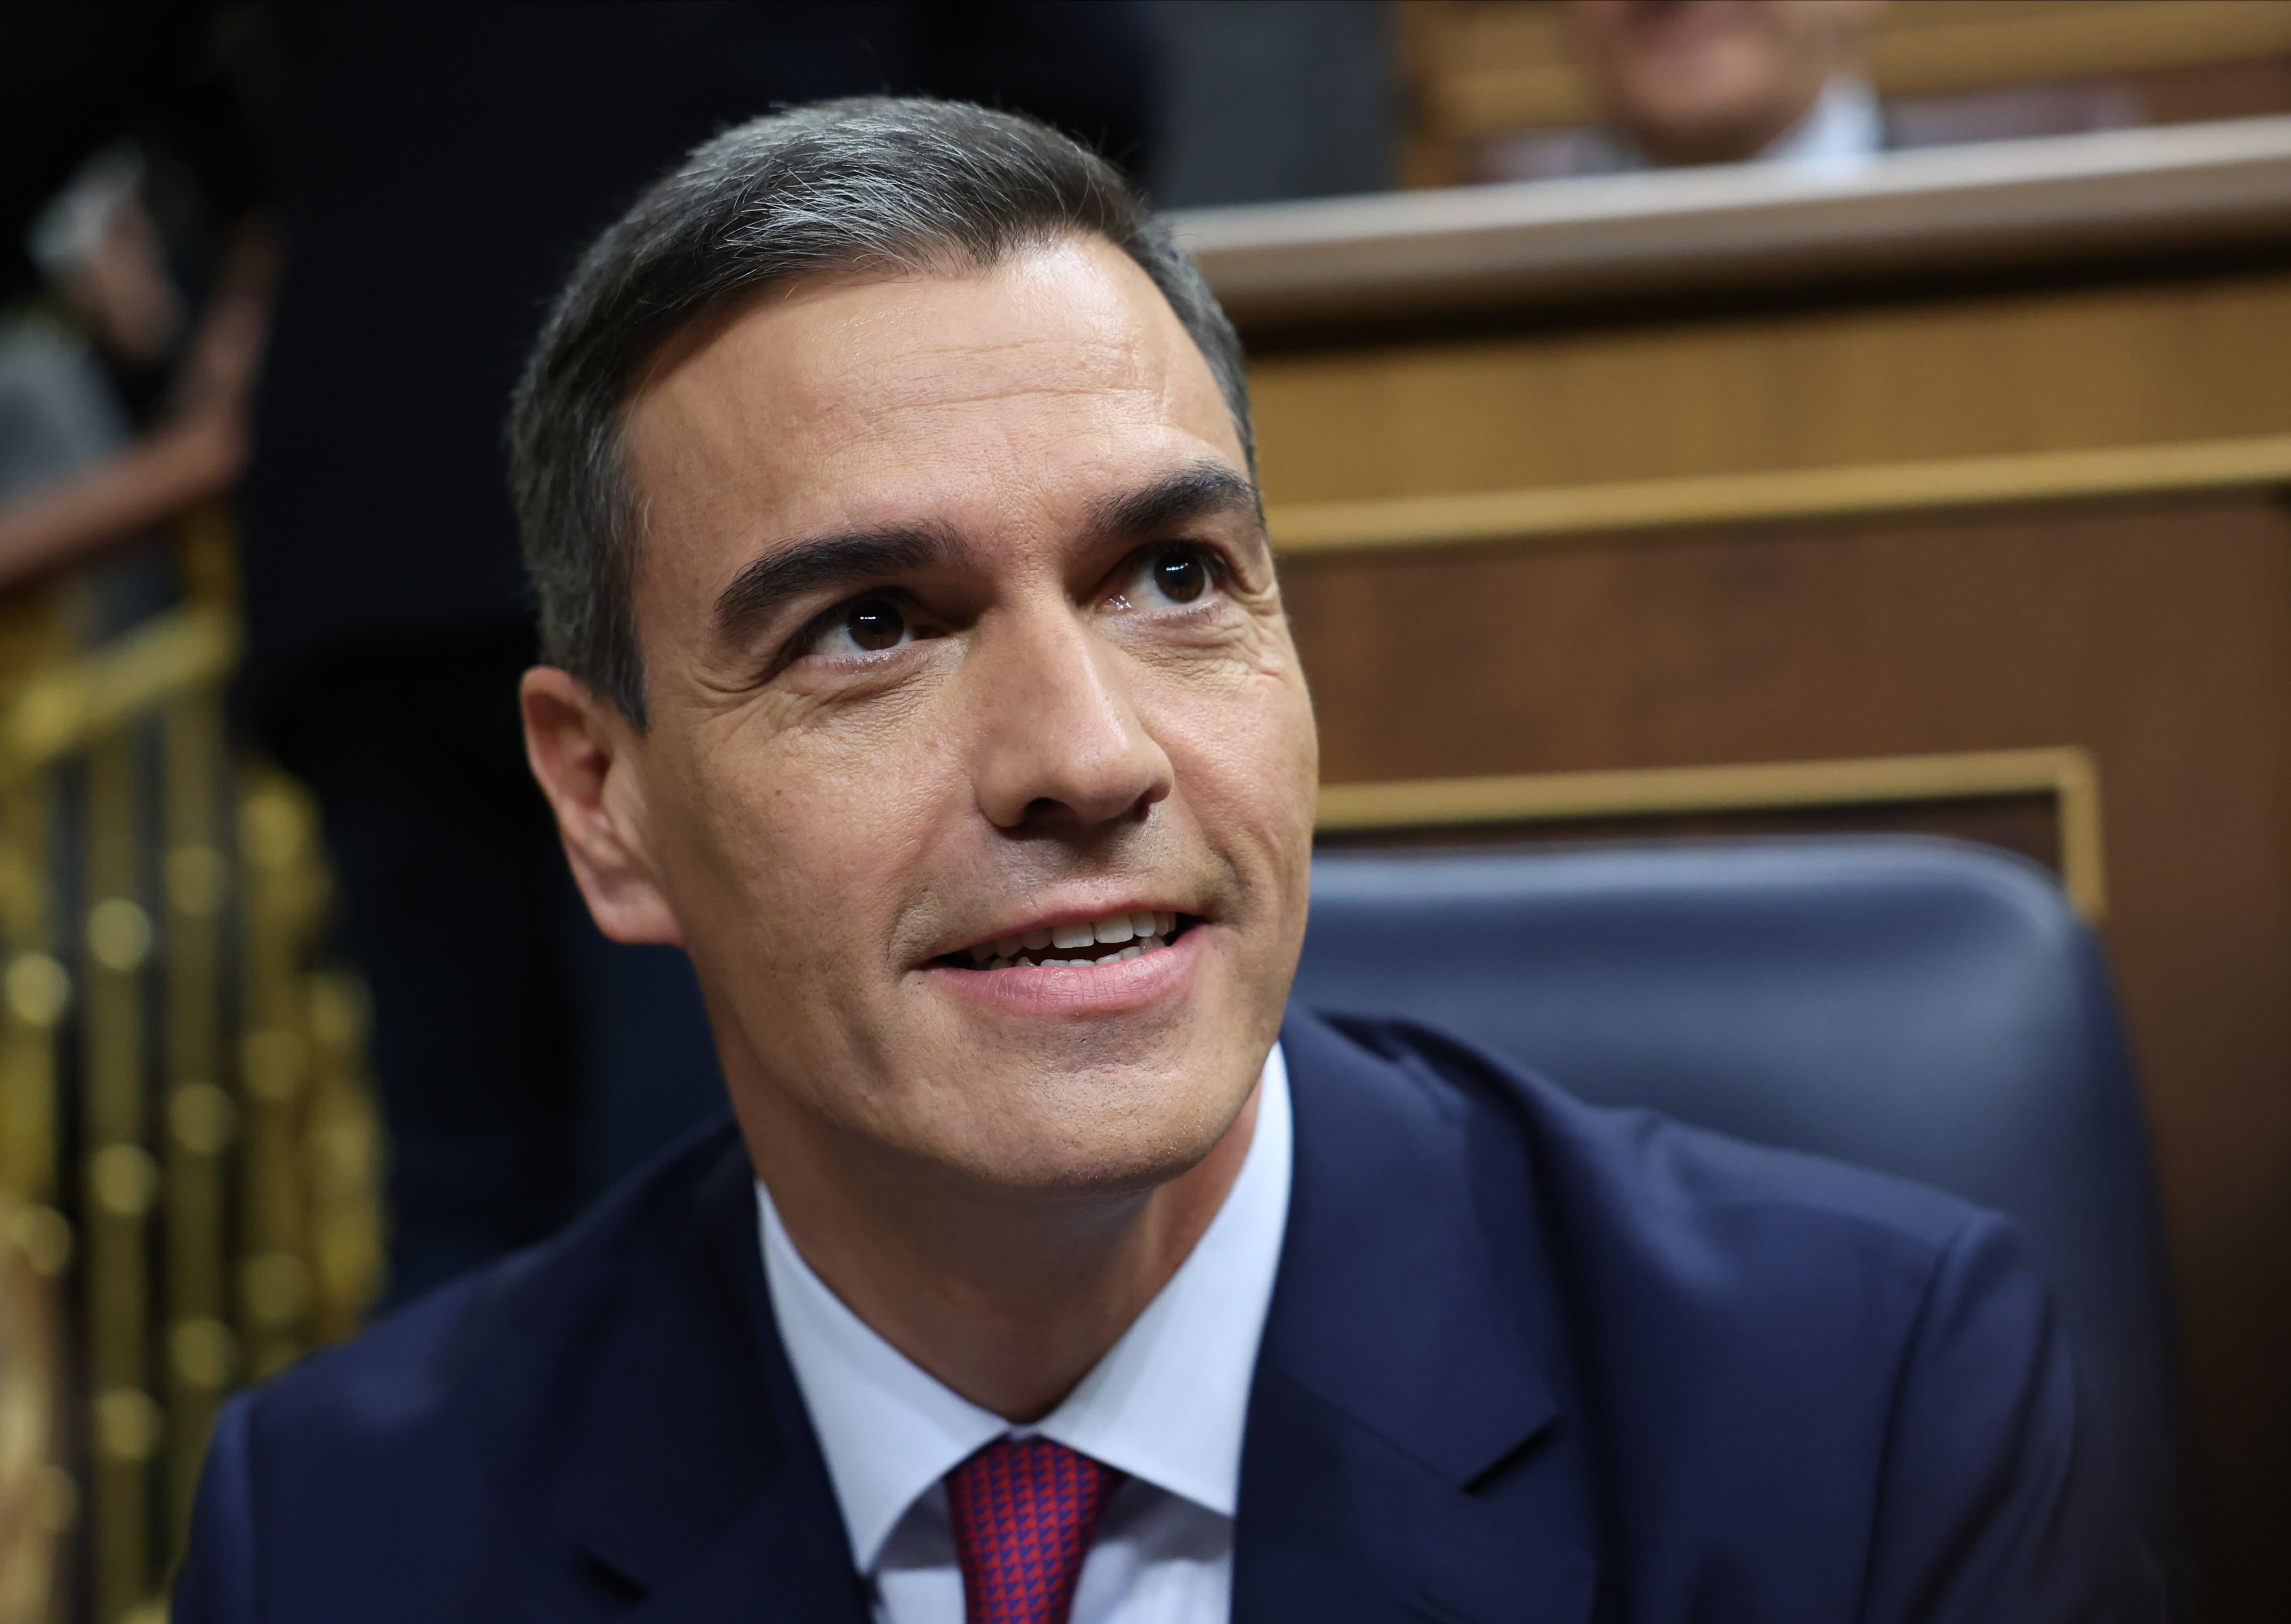 Pedro Sanchez erhält eine weitere Amtszeit als spanischer Premierminister und soll eine Regierung bilden